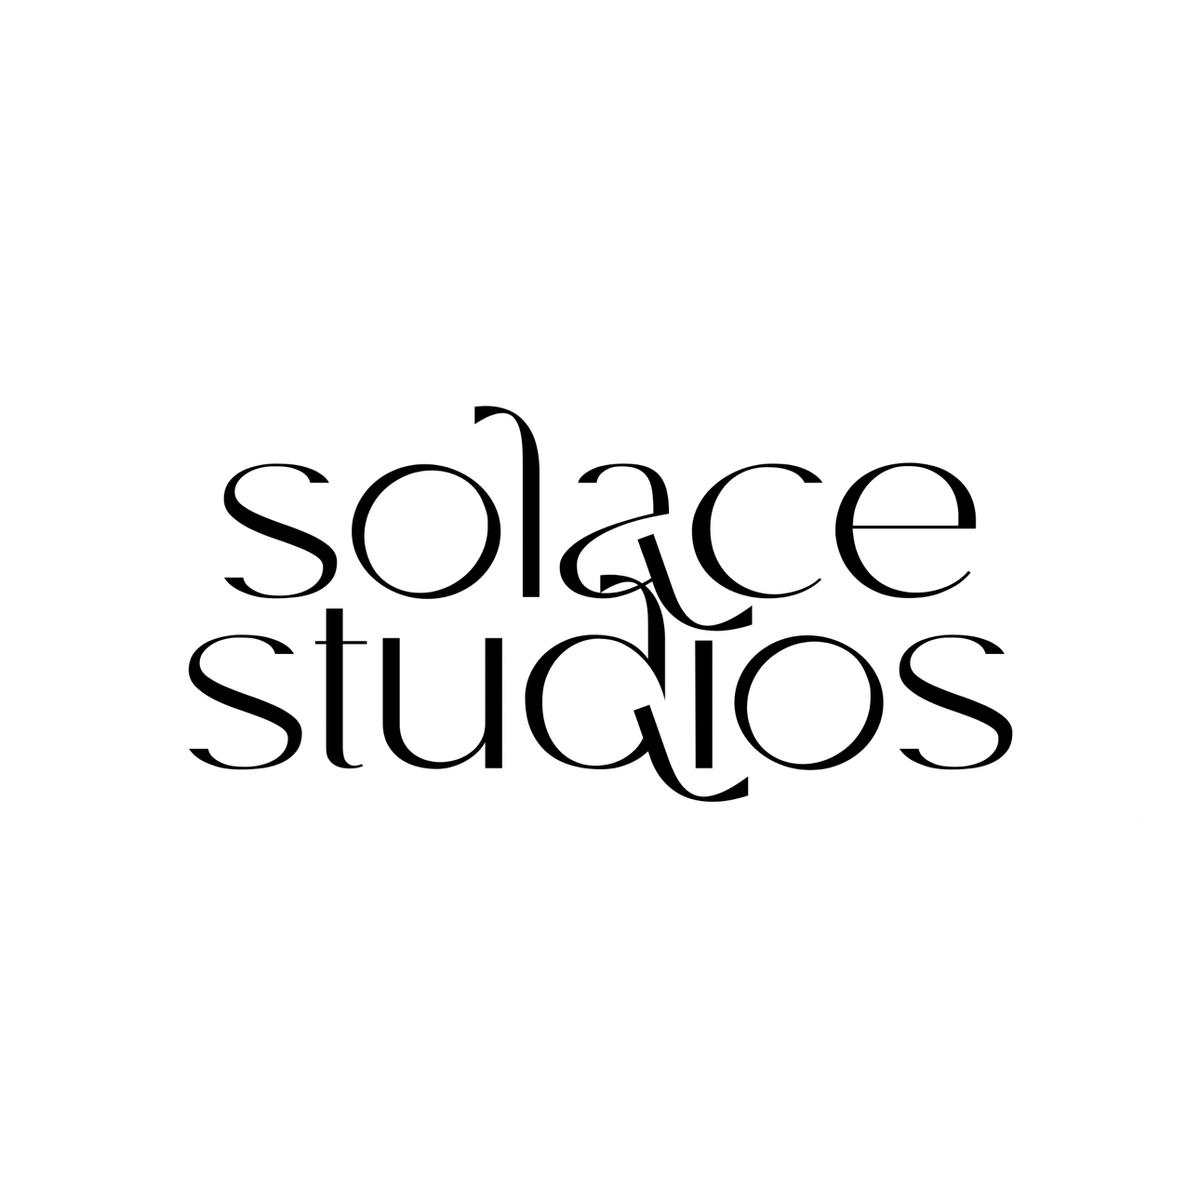 Solace Studios's images